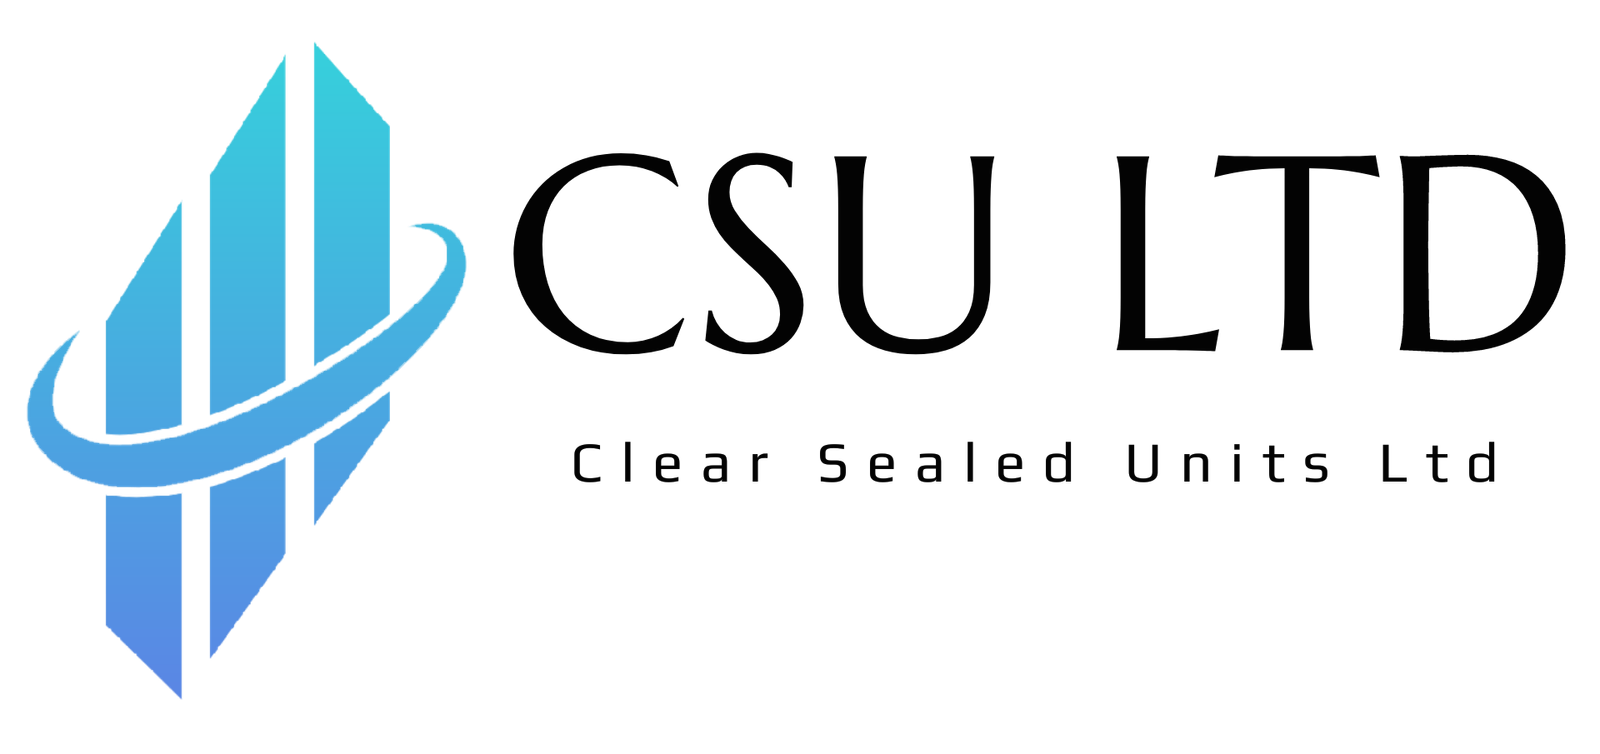 CSU Ltd - Clear Sealed Units Ltd